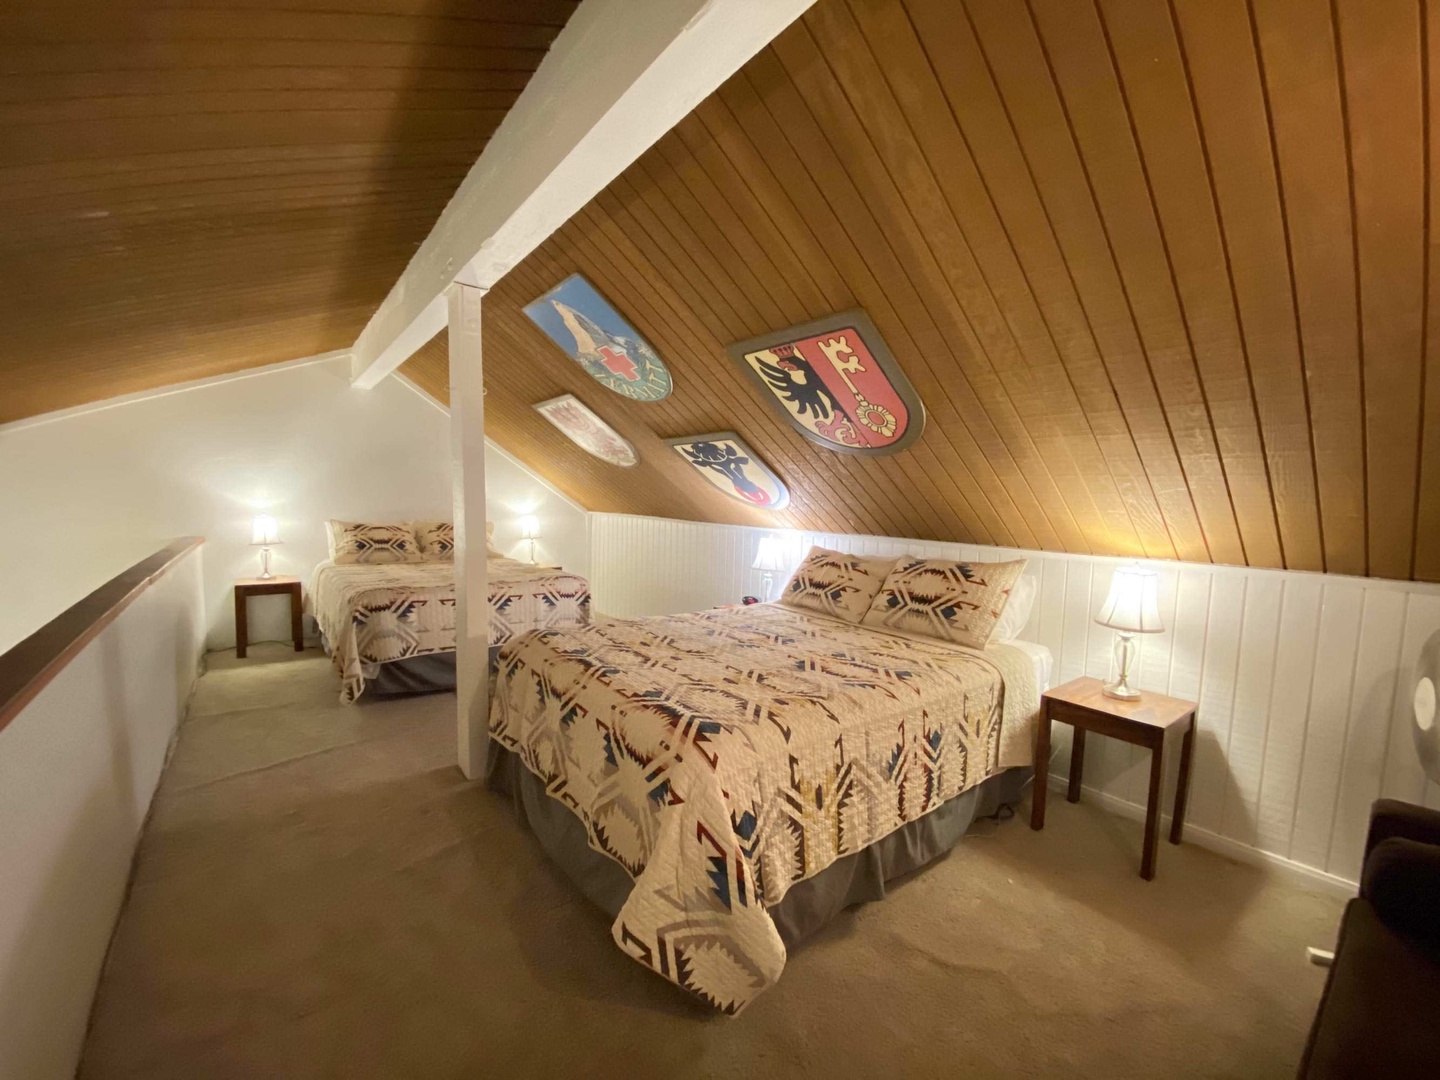 Loft: 2 Queen beds